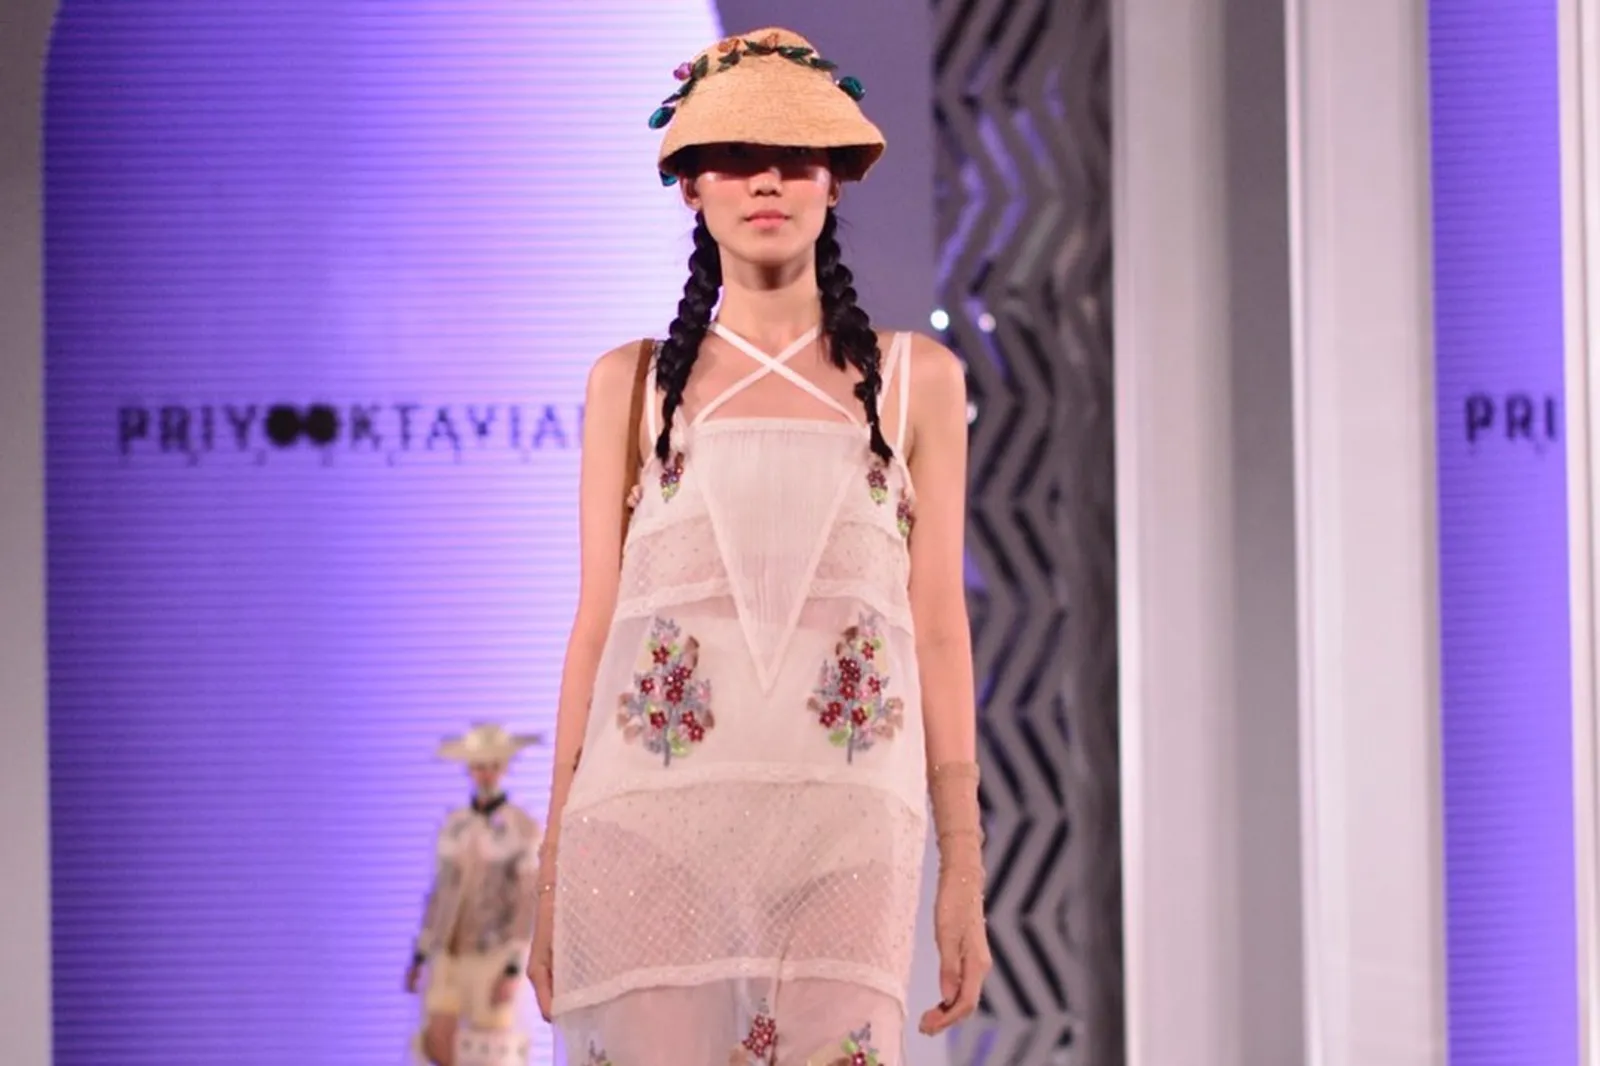 Pembukaan Fashion Nation Diramaikan Oleh 3 Desainer Ternama Indonesia 